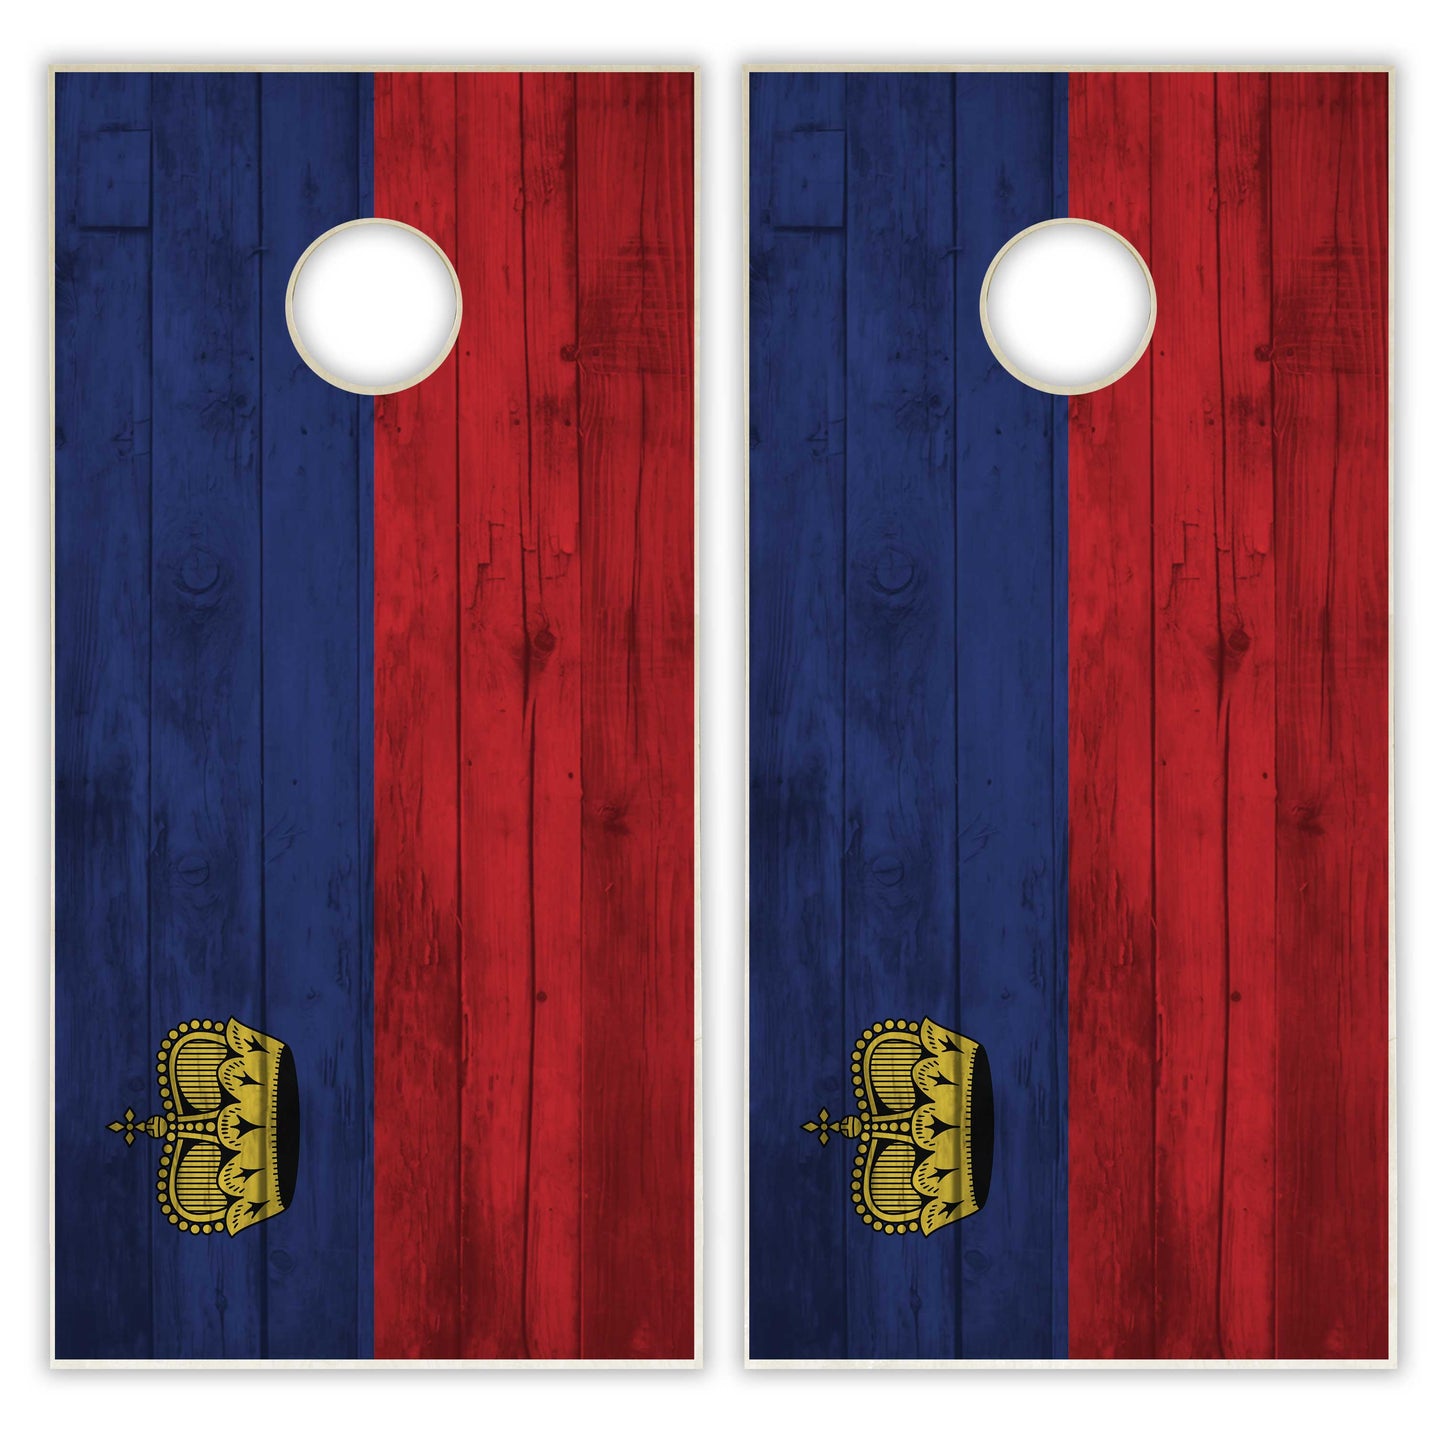 Liechtensteinn Flag Cornhole Set - Distressed Wood